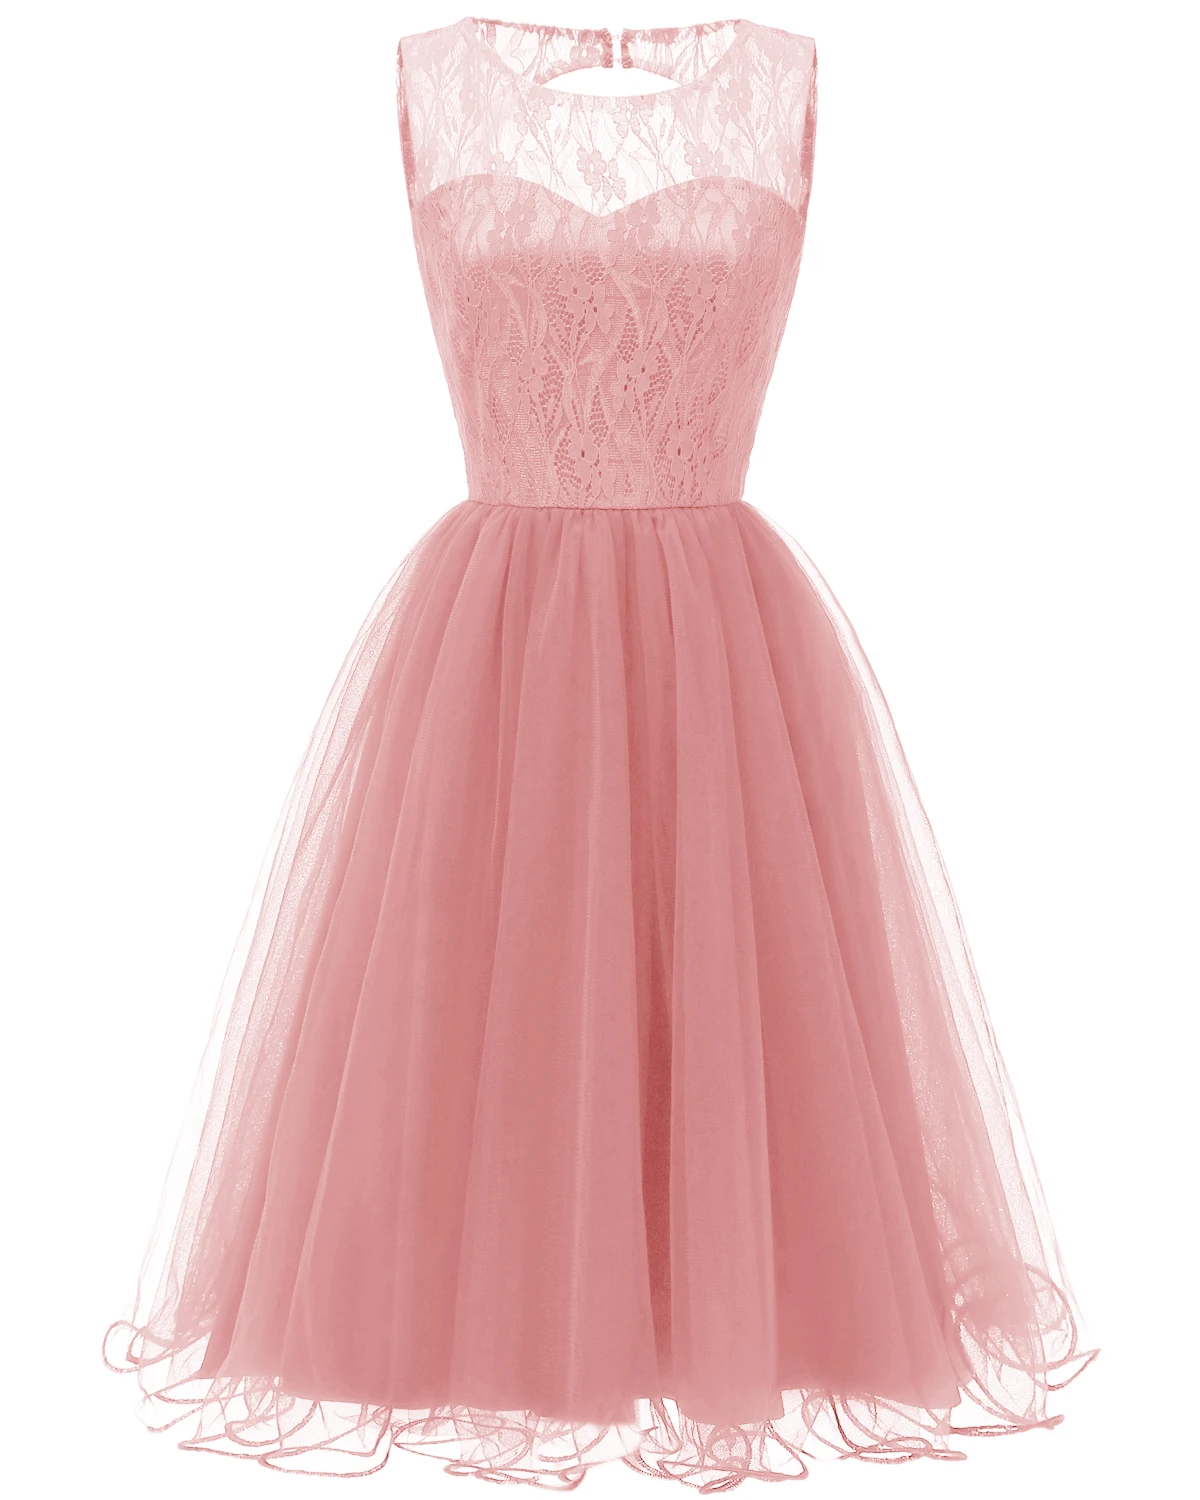 Eveningdress Новое ажурное кружевное винтажное платье-американка осень-зима коктейльное платье Коллекция темно-синий розовый винный красный - Цвет: Розовый